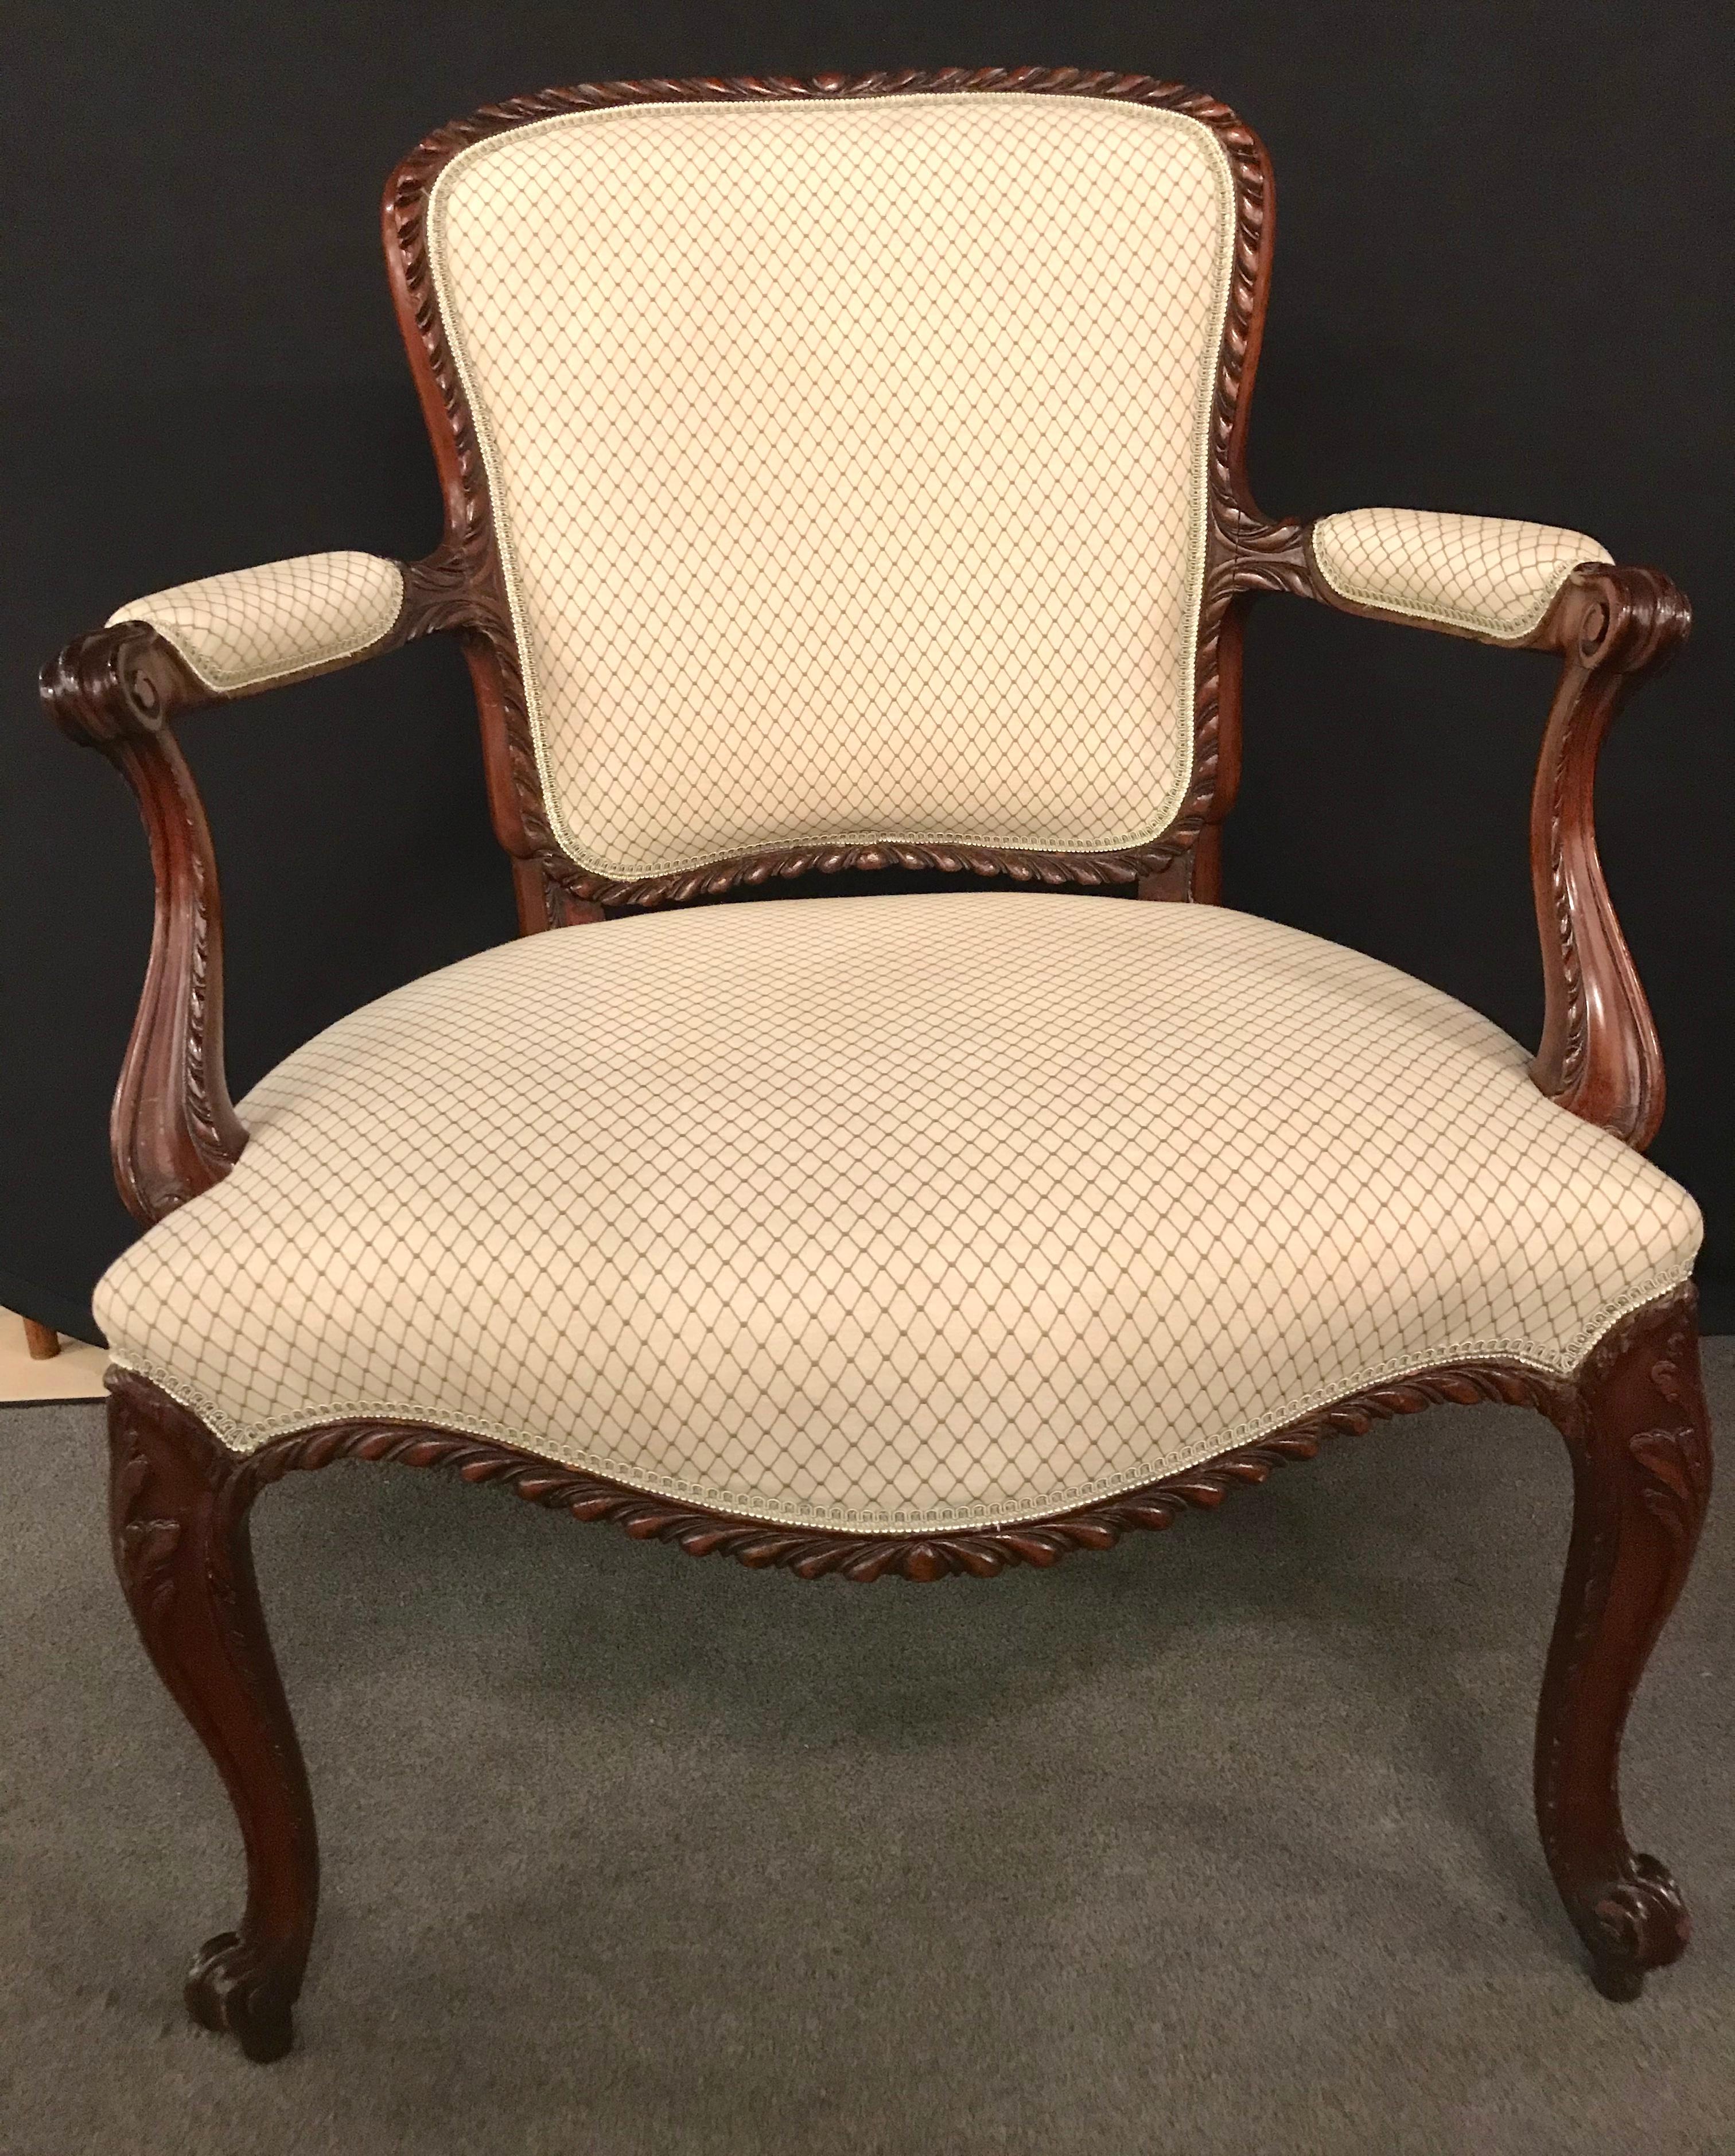 Ein feines Paar Fauteuils oder Bergères aus Nussbaum im Louis XV-Stil in einem Scalamandre-Stoff. Ein schlichtes Paar geschnitzter Sessel aus feinstem Stoff mit gestreiftem Stoff in der Rückenlehne und Sitz und Rückenlehne im Tweed-Design.